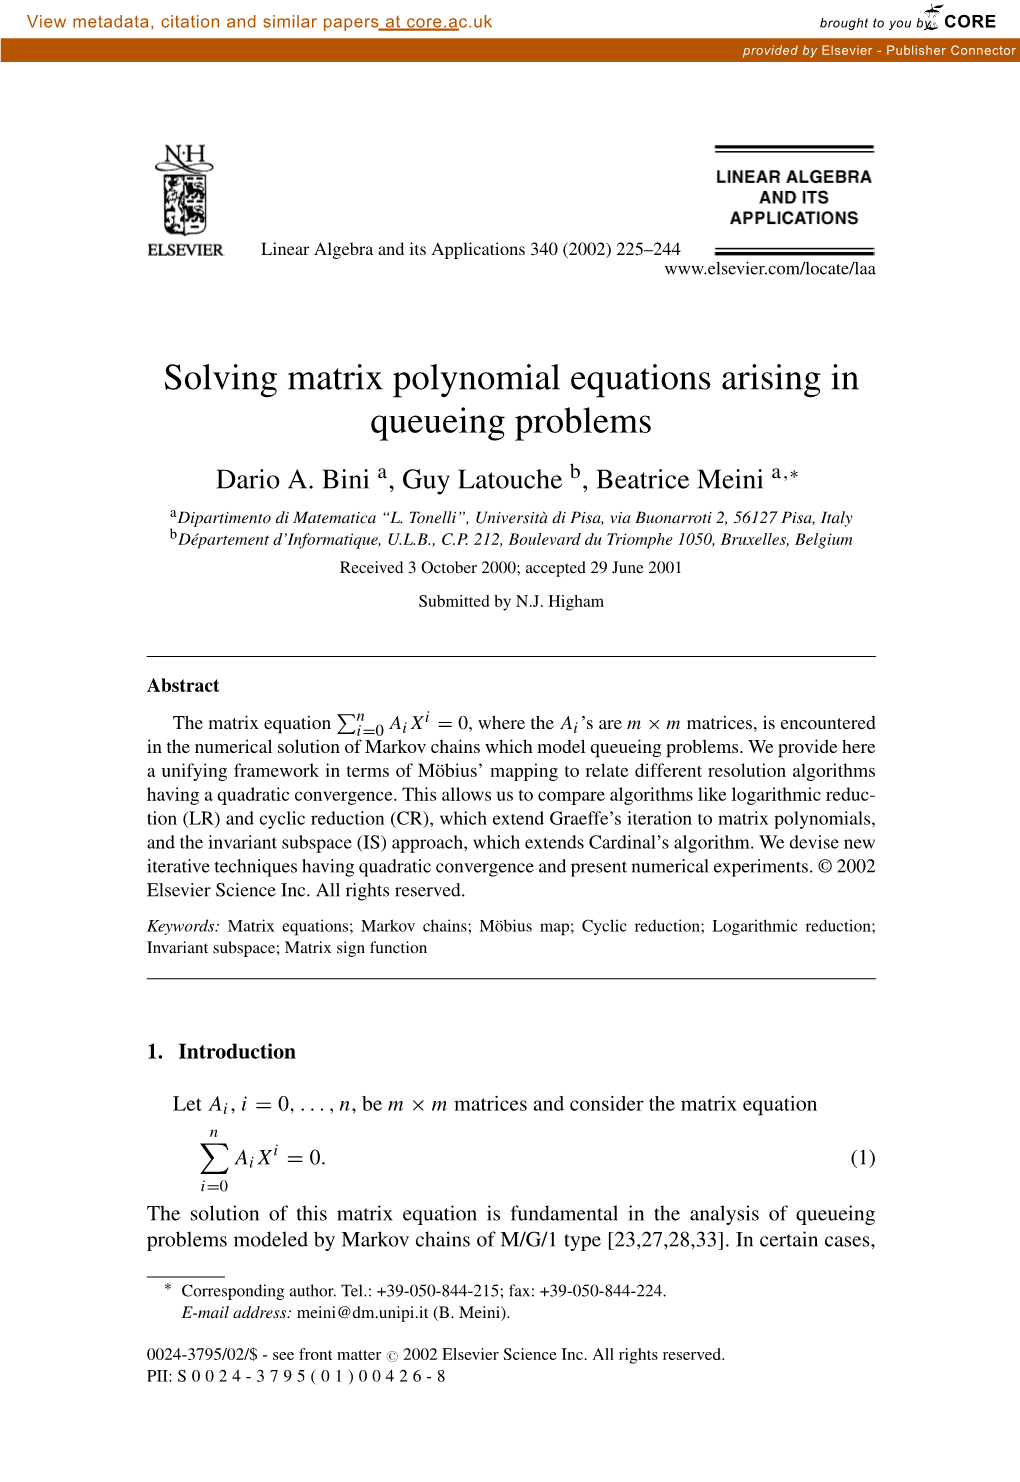 Solving Matrix Polynomial Equations Arising in Queueing Problems Dario A